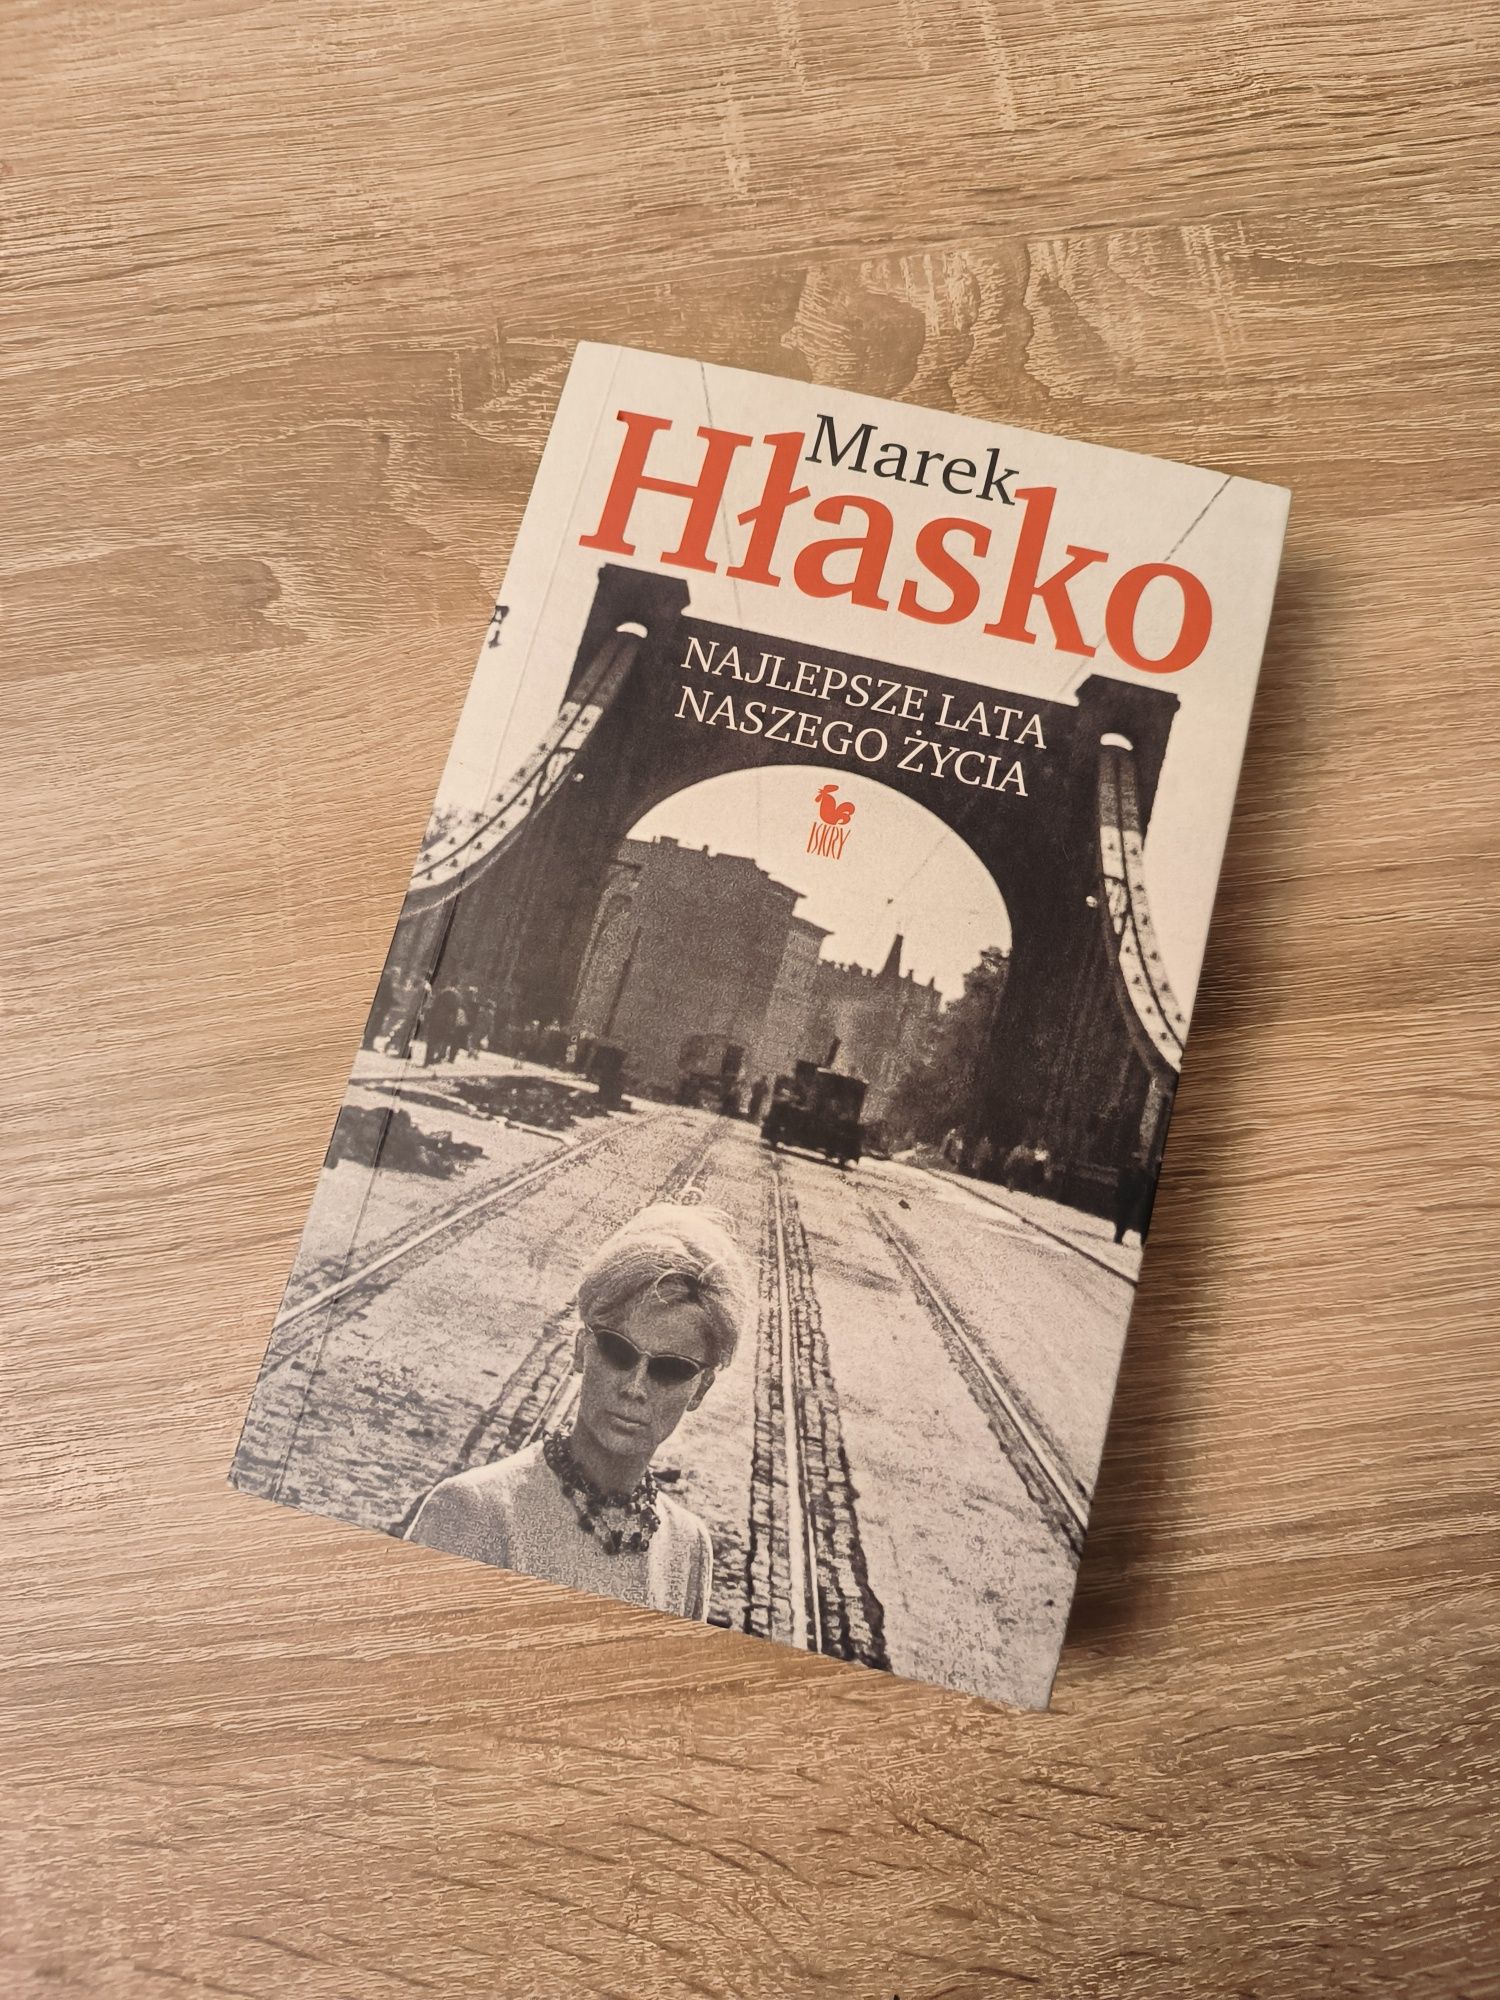 Książka "Najlepsze lata naszego życia" by Marek Hłasko